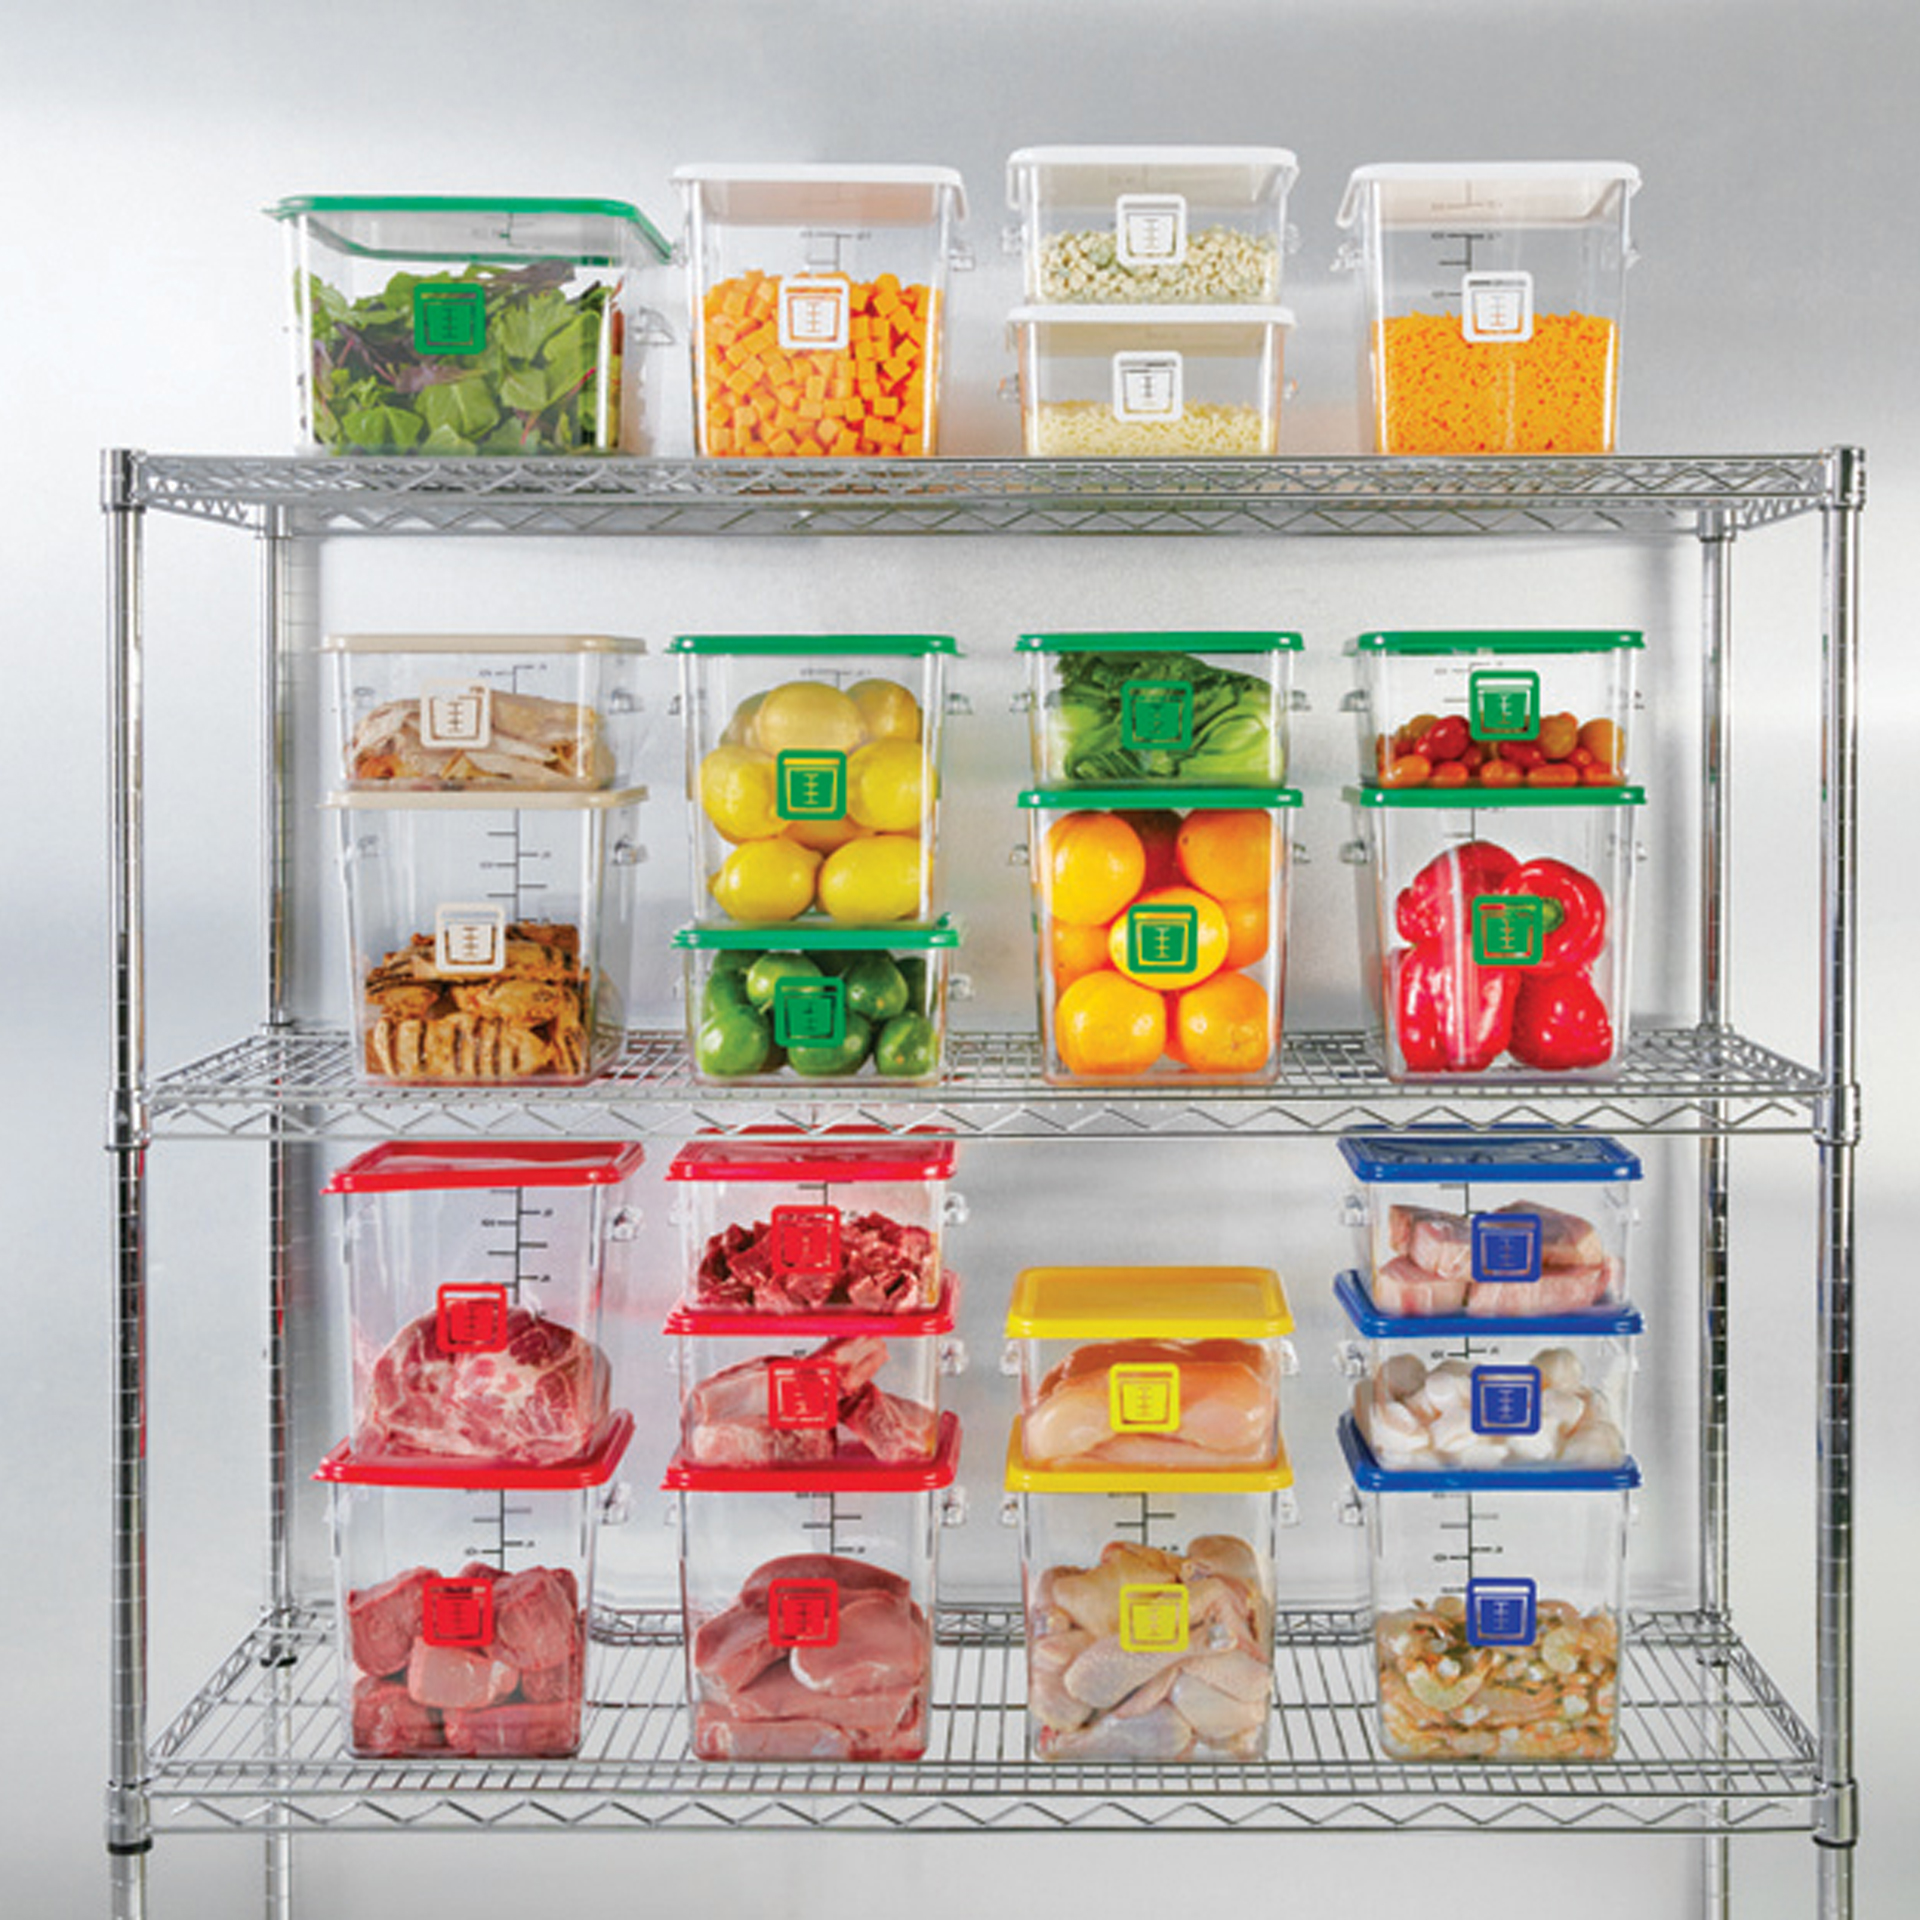 กล่องเก็บวัตถุดิบอาหารสี่เหลี่ยม Color-Coded Square Container Clear ขนาด 8 qt สีแดง